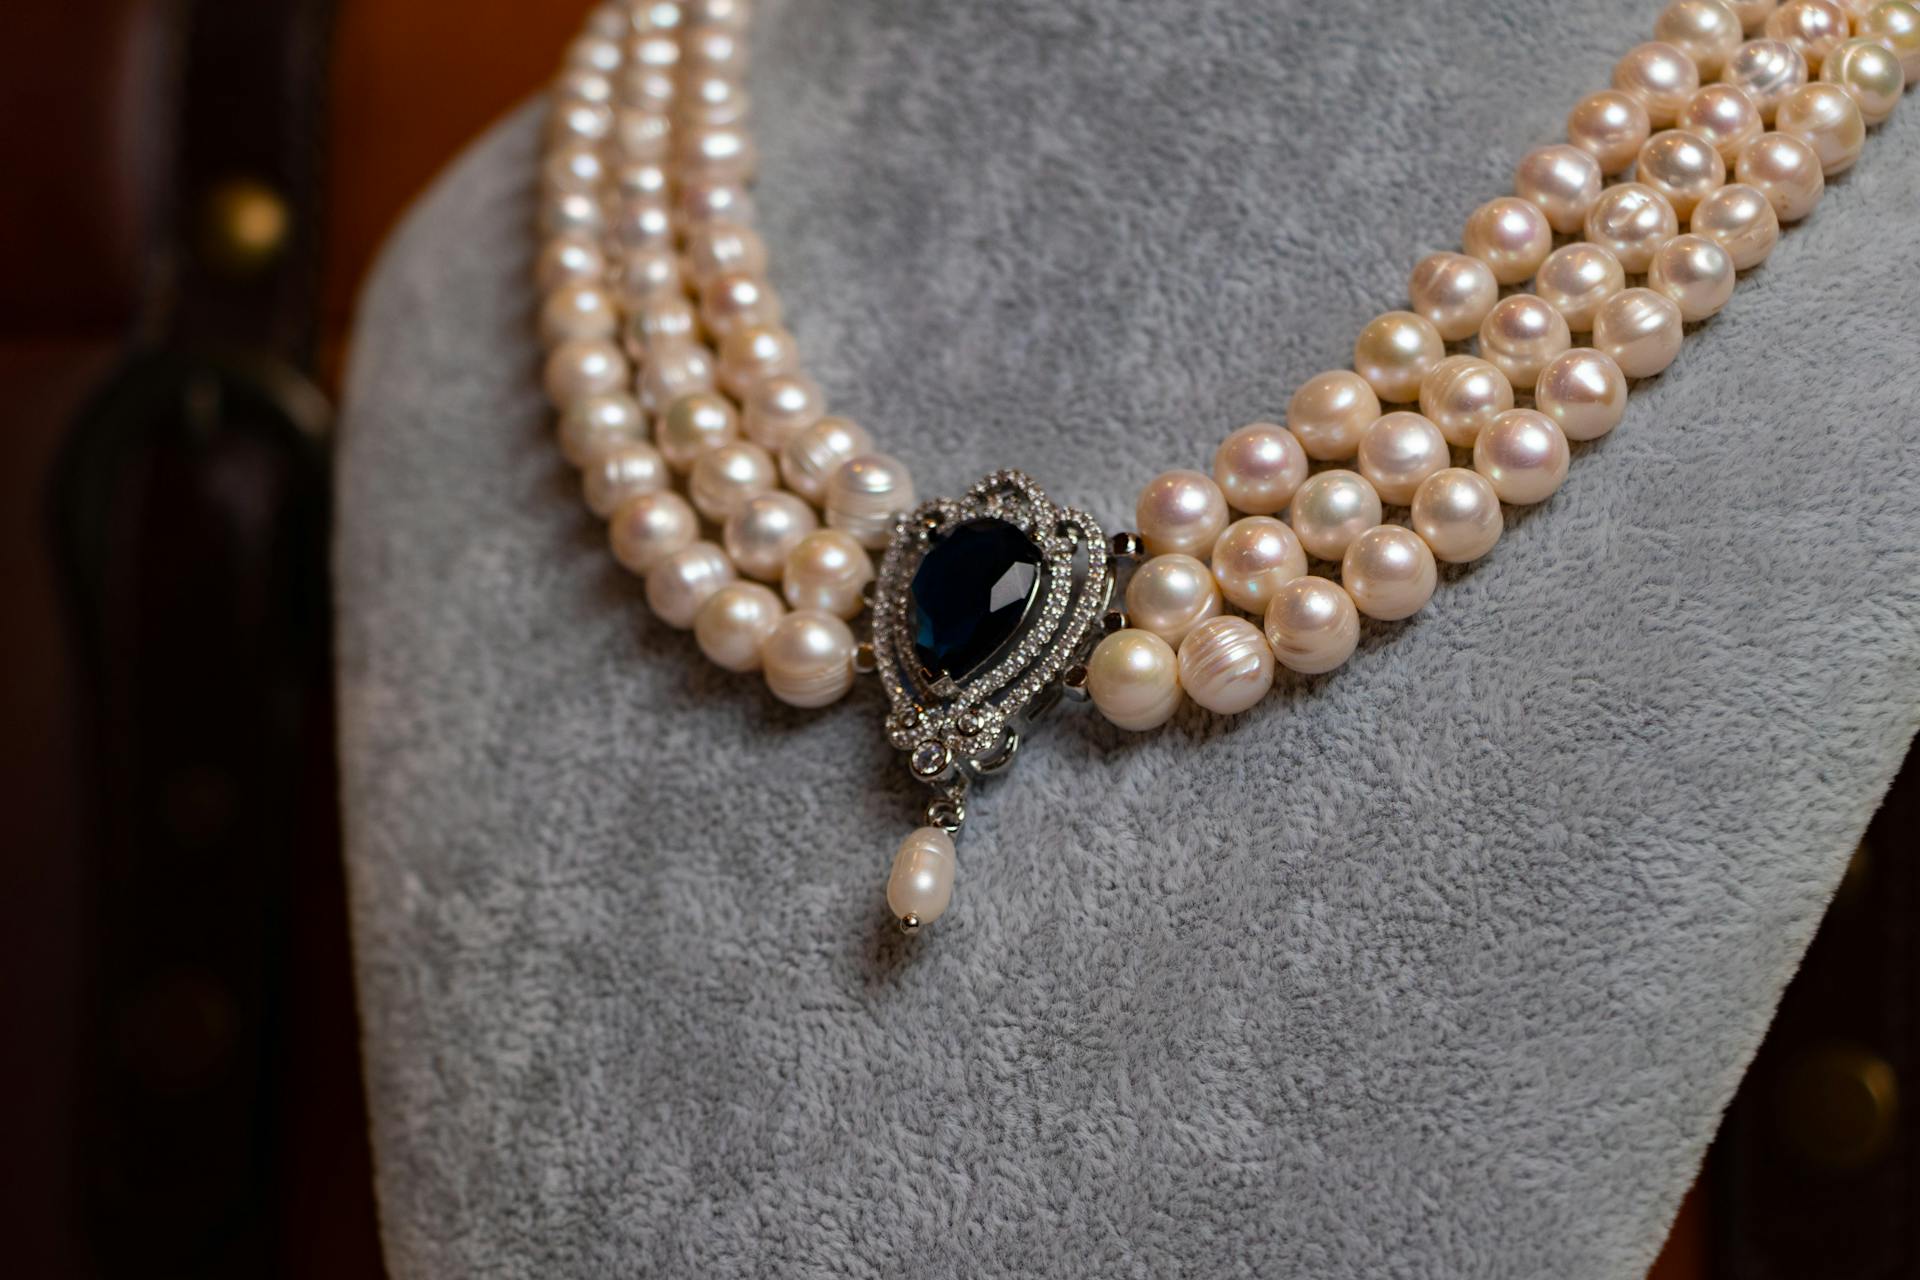 Un collier de perles avec une pierre précieuse sombre | Source : Pexels